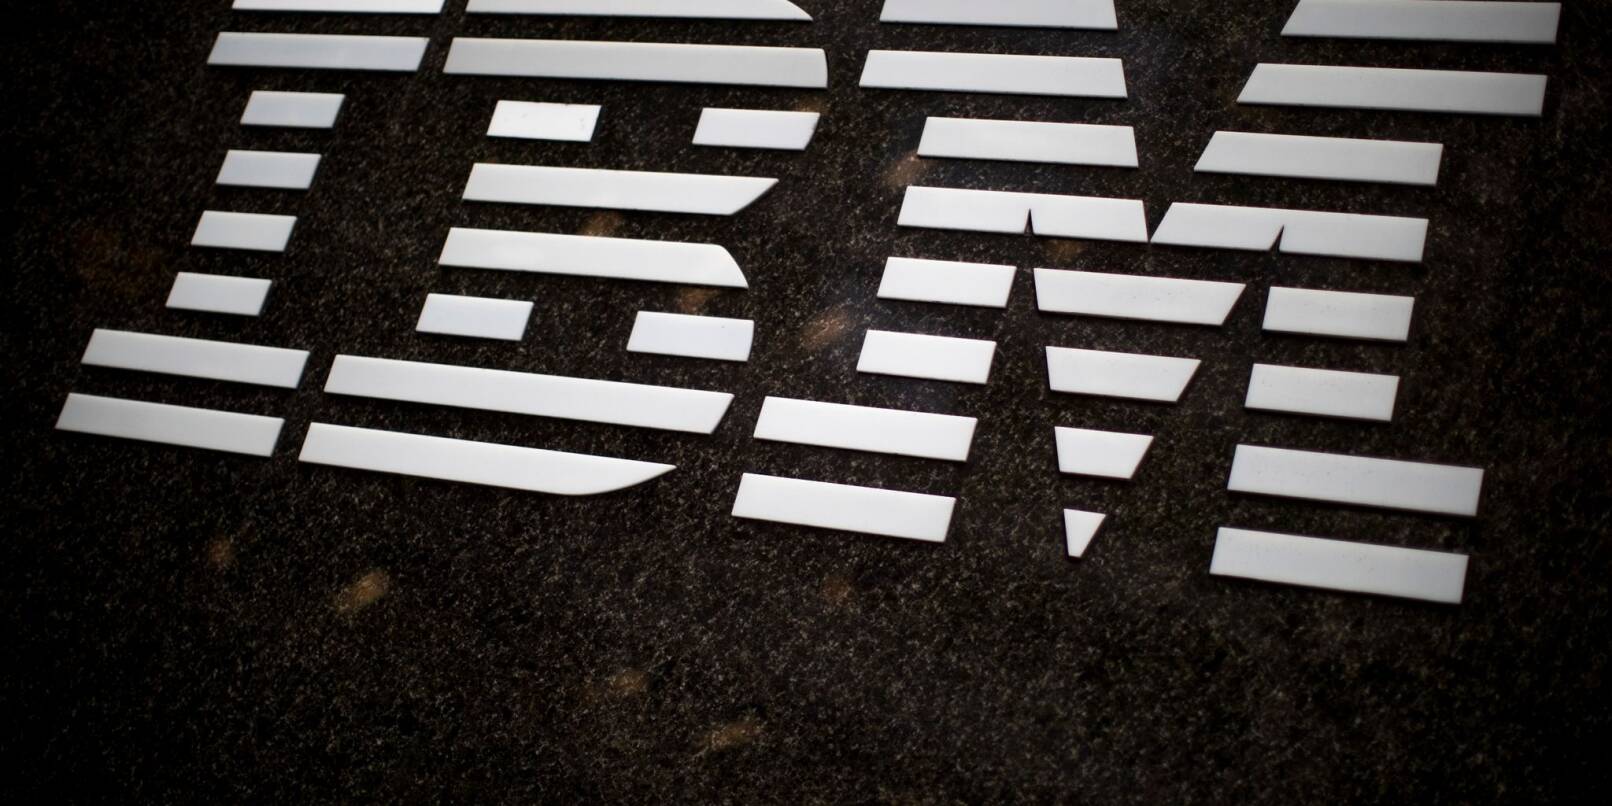 Der Computerriese IBM verzichtet zukünftig auf Werbung via X.